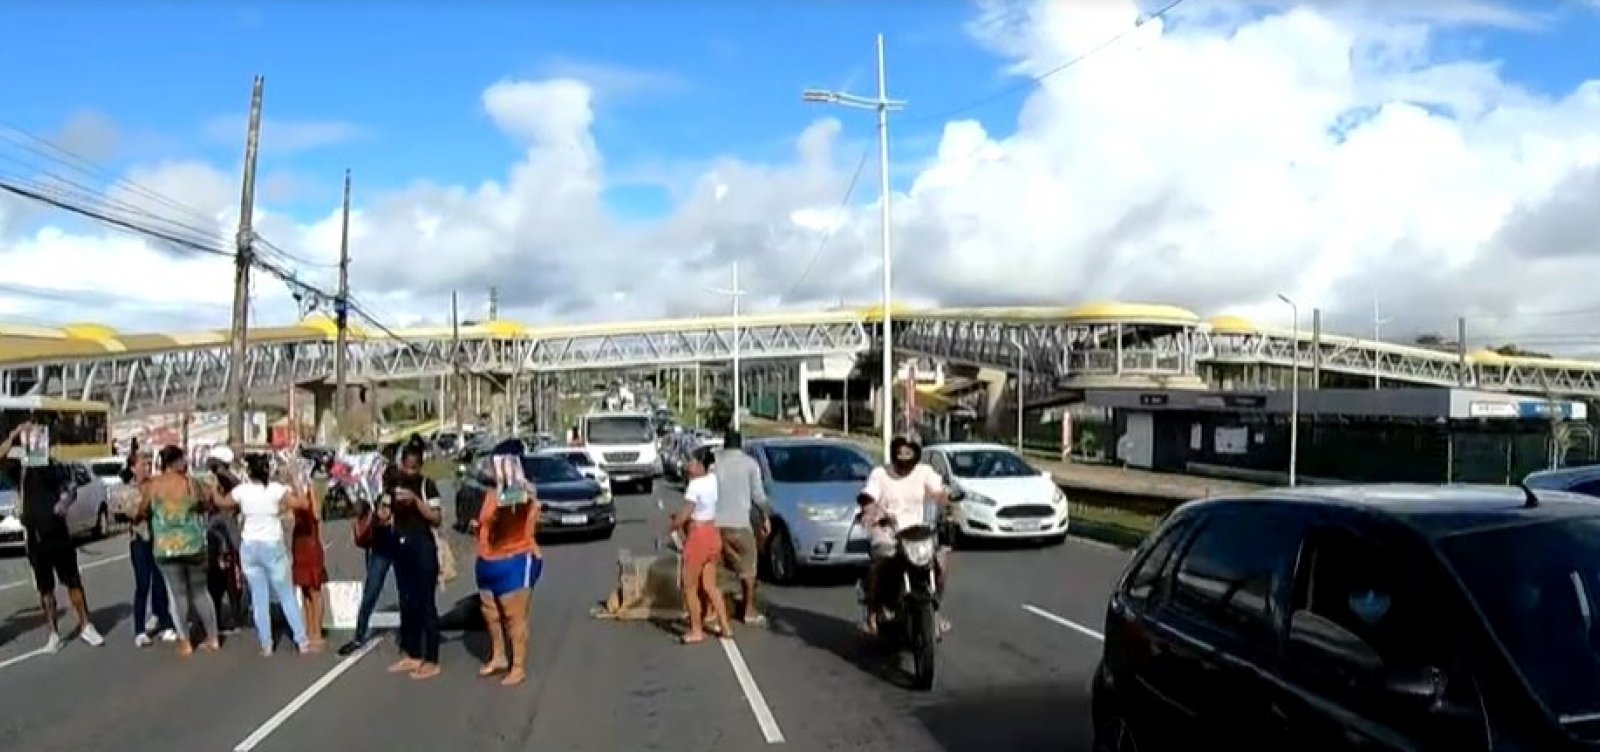 Foto: Reprodução/TV Bahia